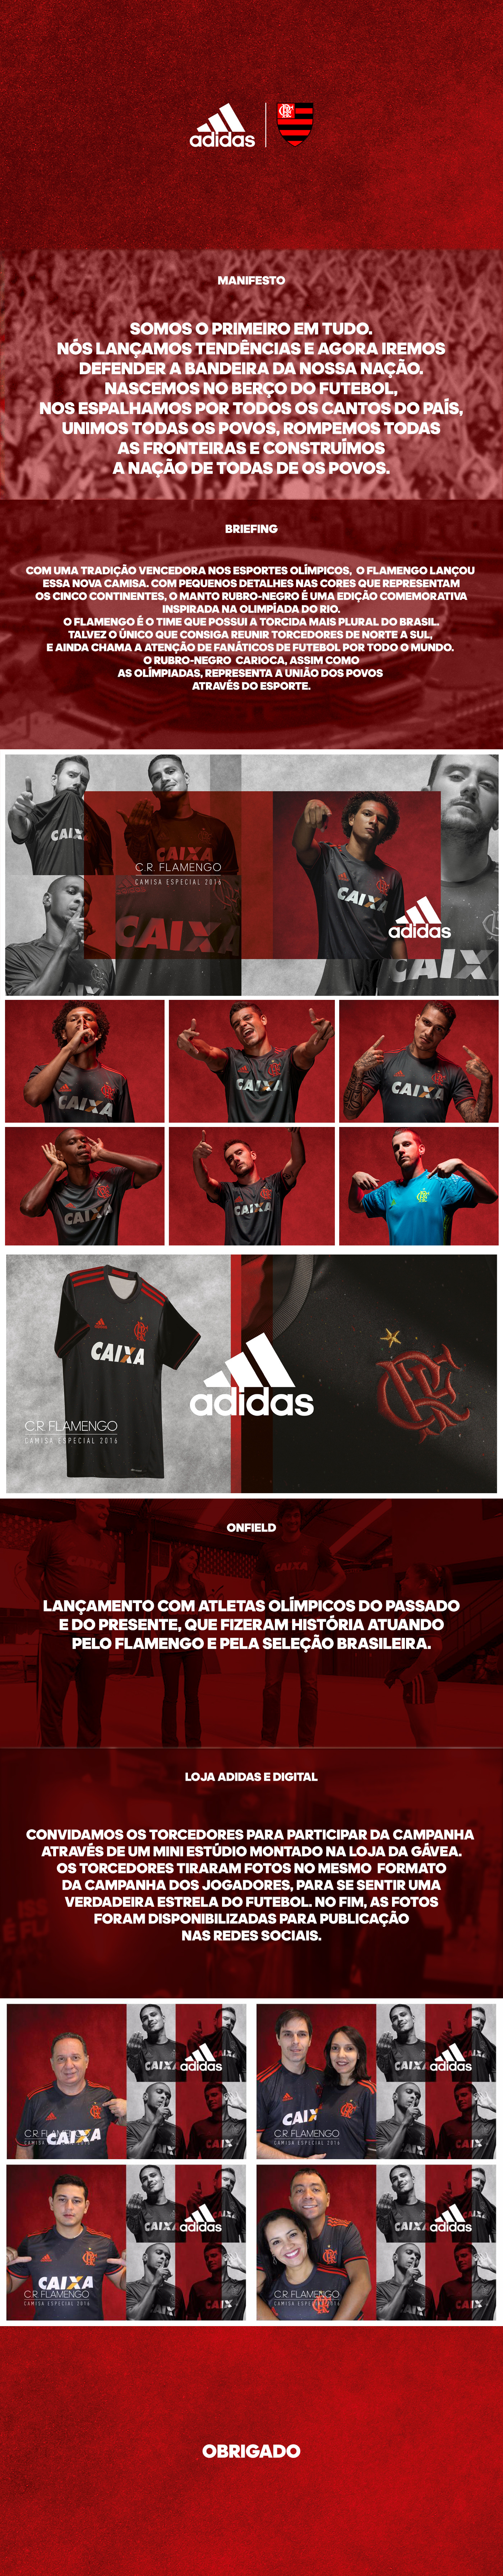 flamengo adidas football soccer jersey Brasil Rio de Janeiro rio 2016 Olympic Games futebol